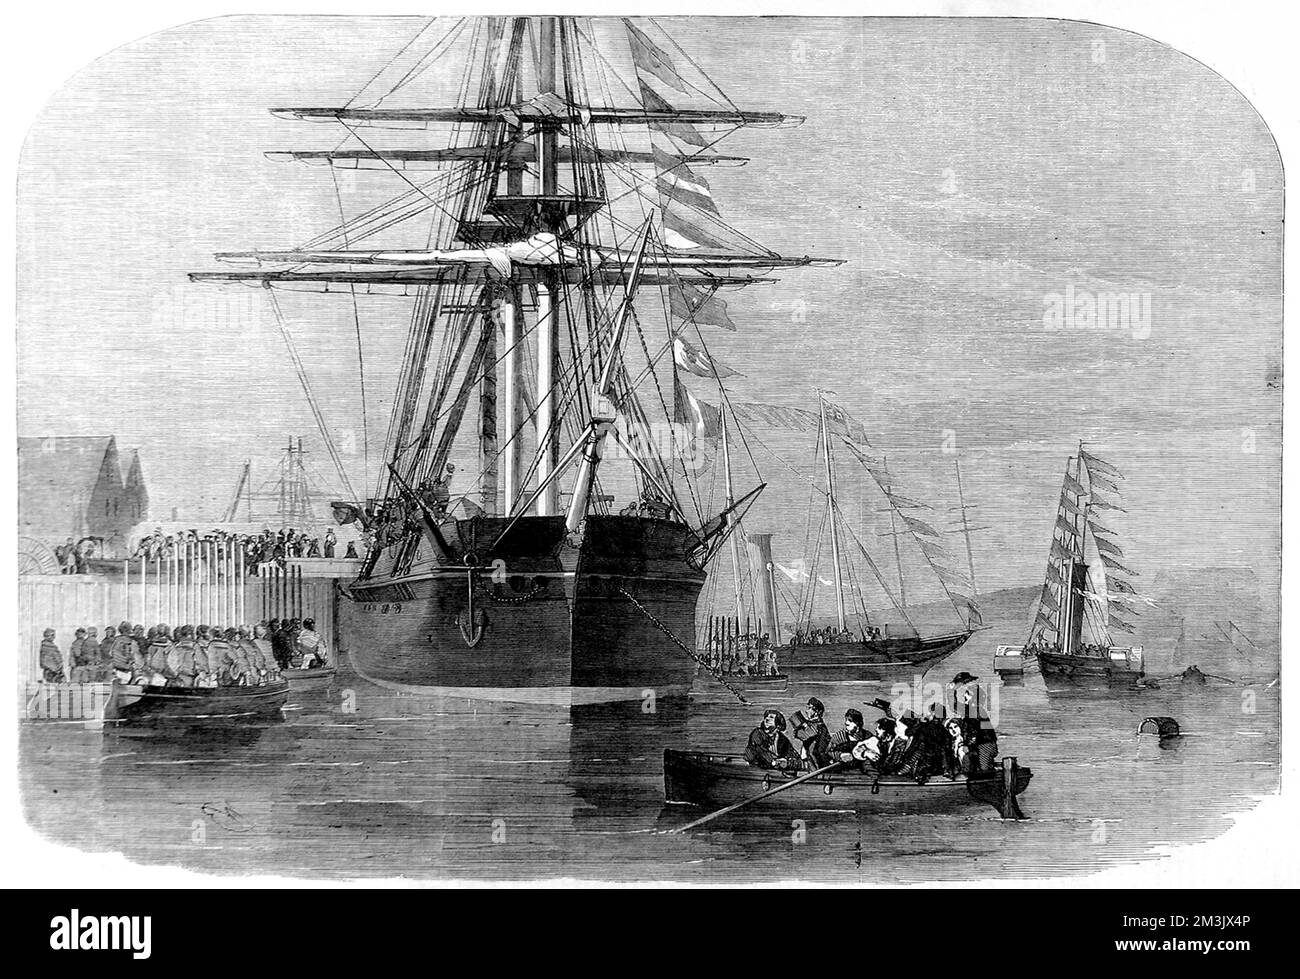 Königin Victoria von Großbritannien an Bord des arktischen Forschungsschiffs HMS „Resolute“ im Hafen von Cowes, 15.. Dezember 1856. 1852 hatte HMS "Resolute" mit drei anderen Royal Navy-Schiffen nach Sir John Franklin gesucht, der 1845 in der Nordwestpassage verschwunden war. Bei ihrer Erkundung der kanadischen Küste wurde Resolute eisgebunden und von ihrer Crew verlassen. Als das Eis schmilzte, reiste das Schiff ohne Besatzung nach Süden, bis es von amerikanischen Walfängern gerettet wurde. Die US-Marine erwarb die Resolute und stellte sie wieder her, segelte sie dann zurück nach England, um dort Pres zu werden Stockfoto